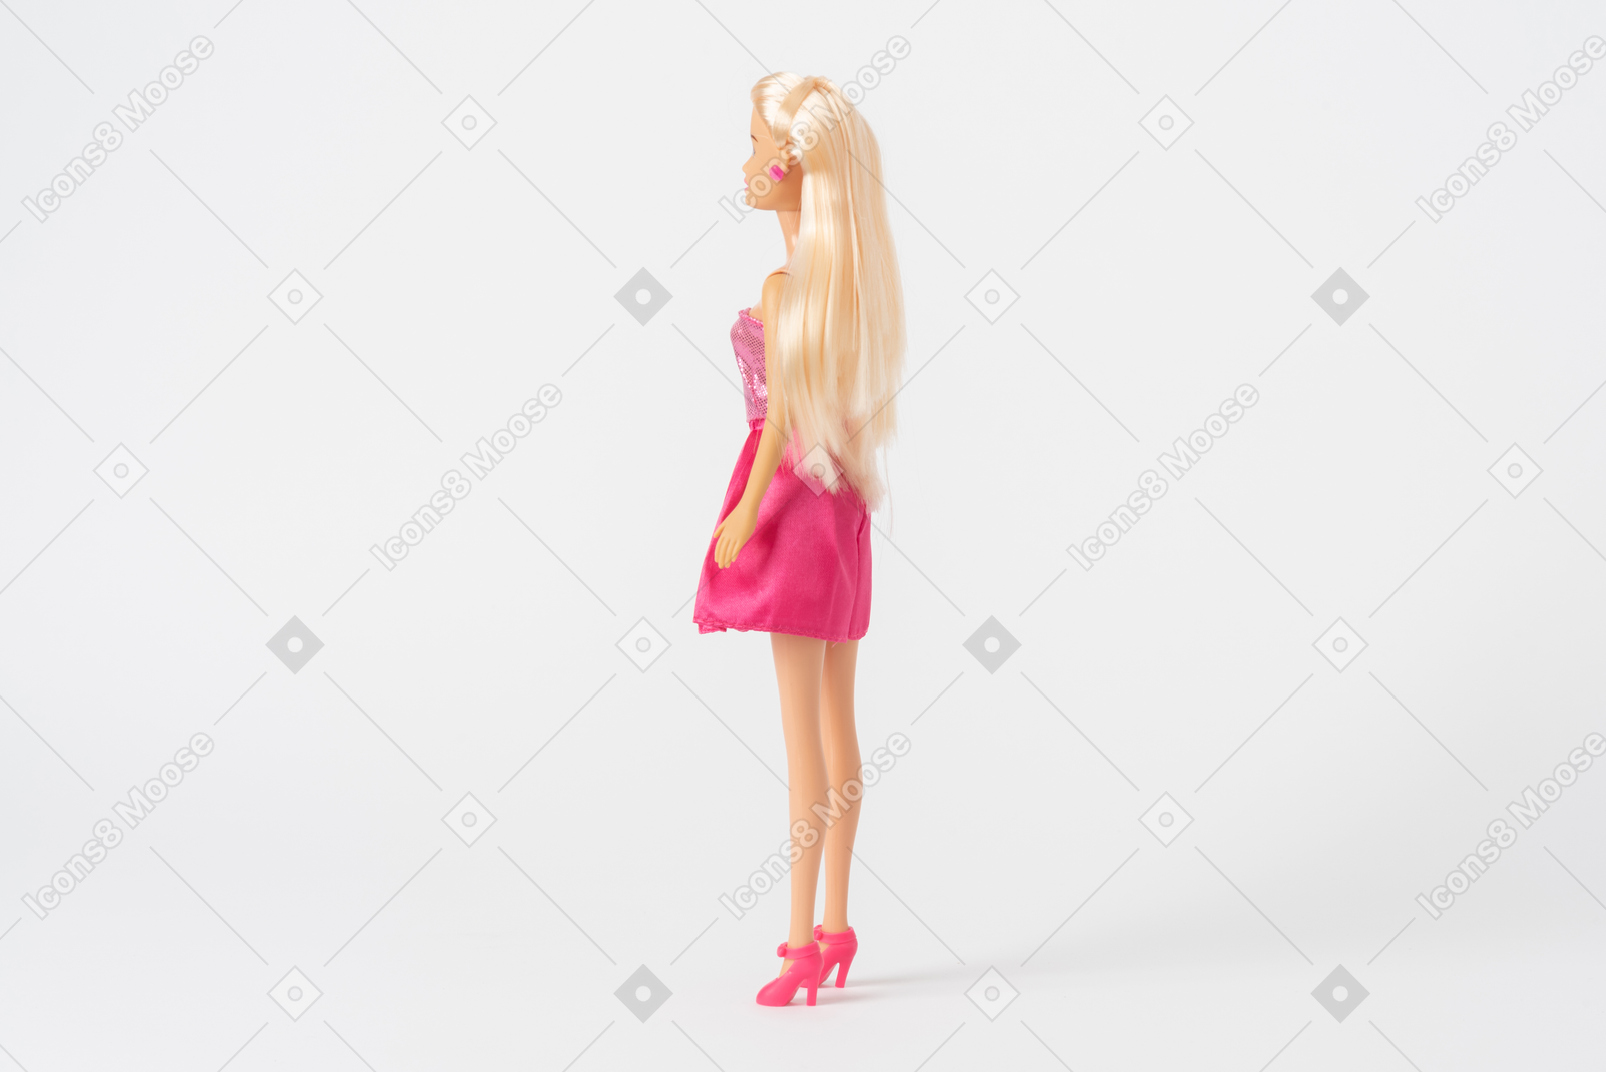 Una foto lateral de una muñeca barbie con un vestido rosa brillante y tacones rosas, de pie aislado contra un fondo blanco liso